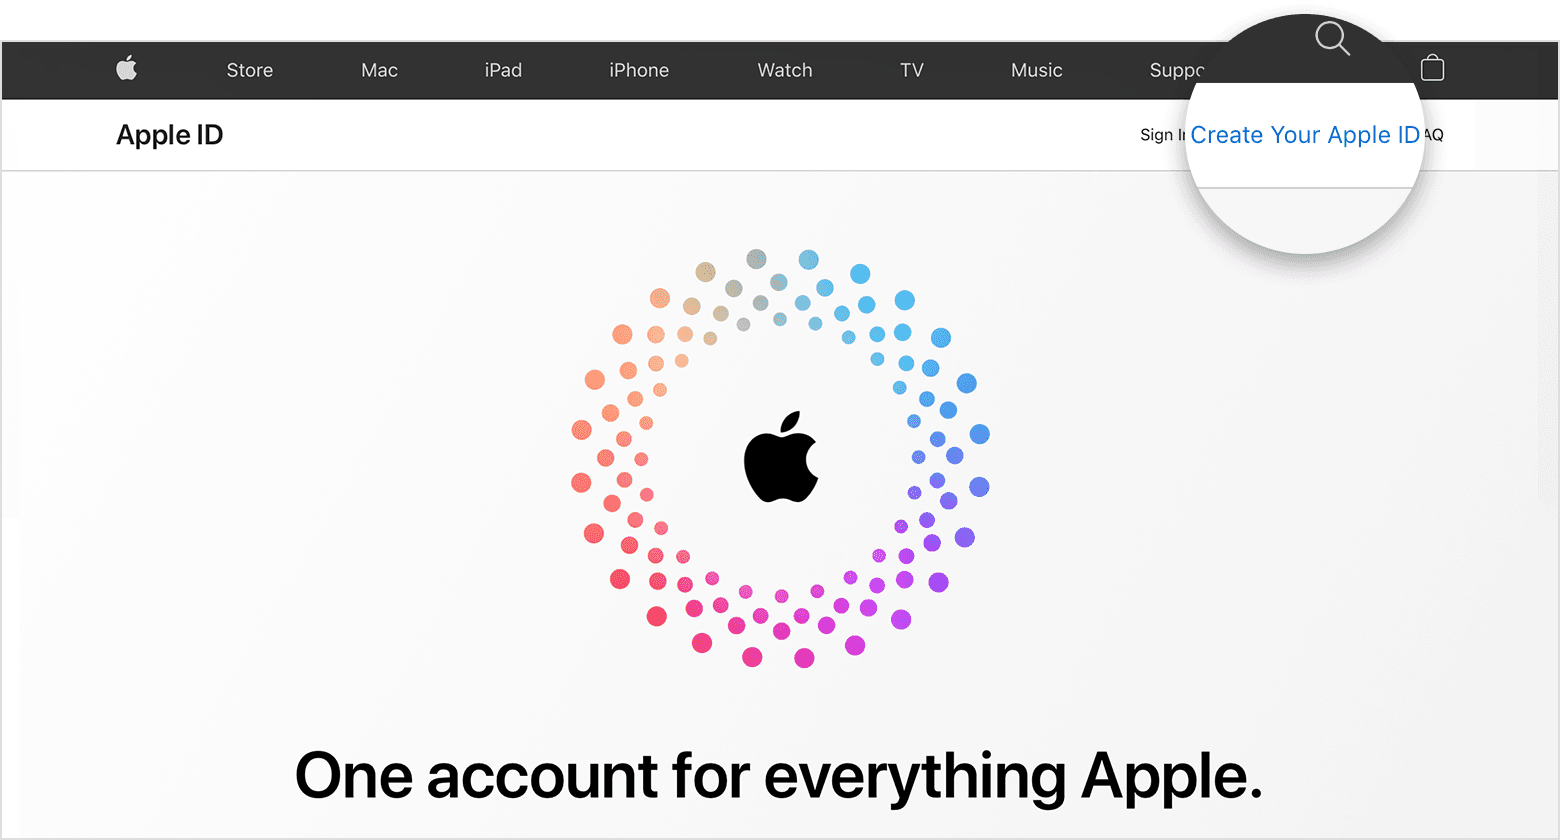 لقطة شاشة لموقع appleid.apple.com، تحتوي على شعار Apple في وسط الشاشة محاط بدوائر ملونة متحدة المركز.